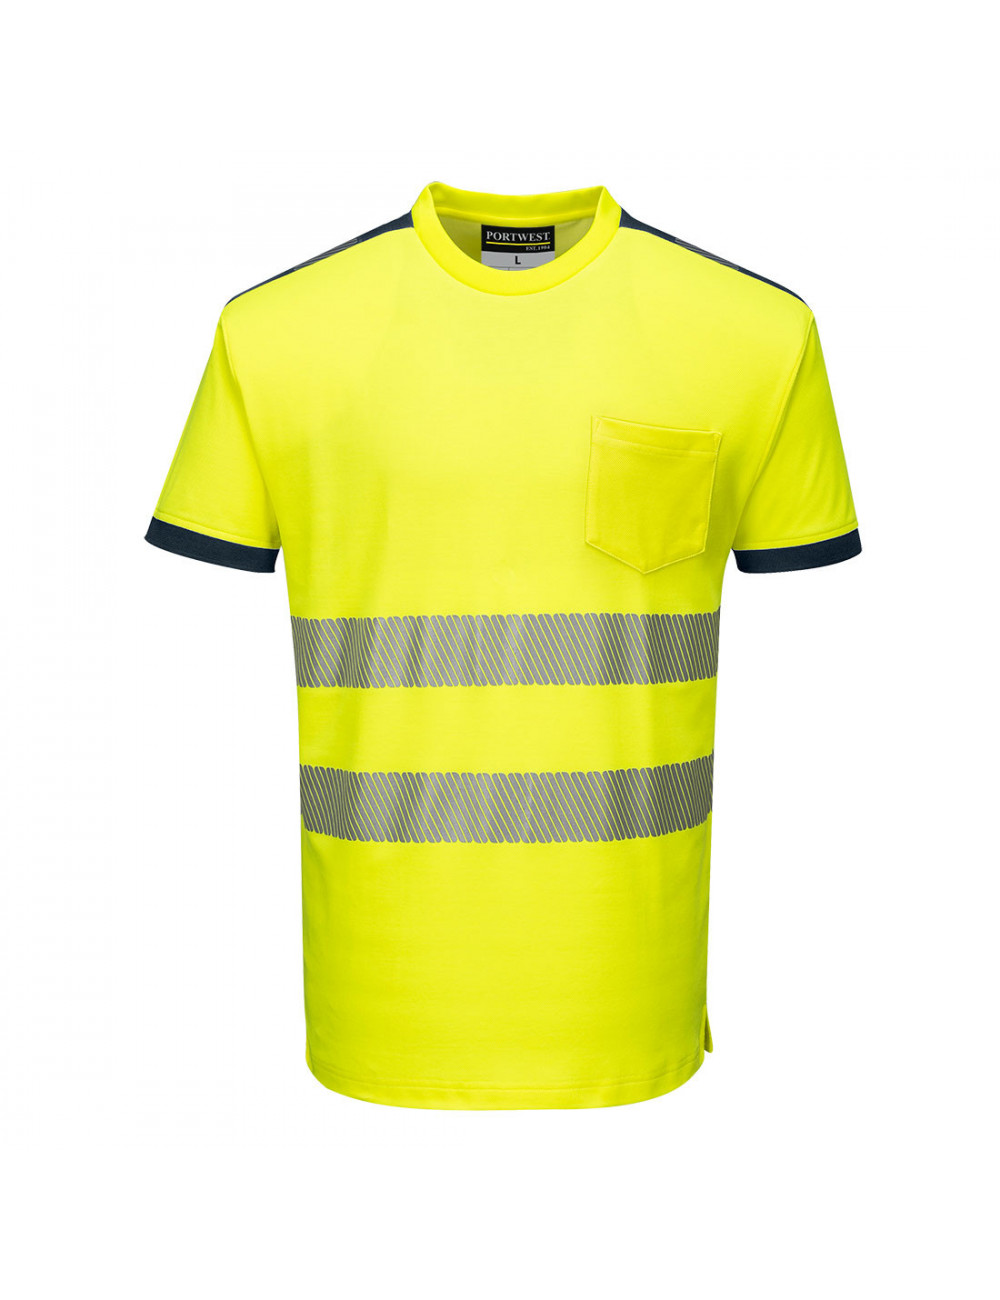 T-shirt ostrzegawczy pw3 żółto/granatowy Portwest